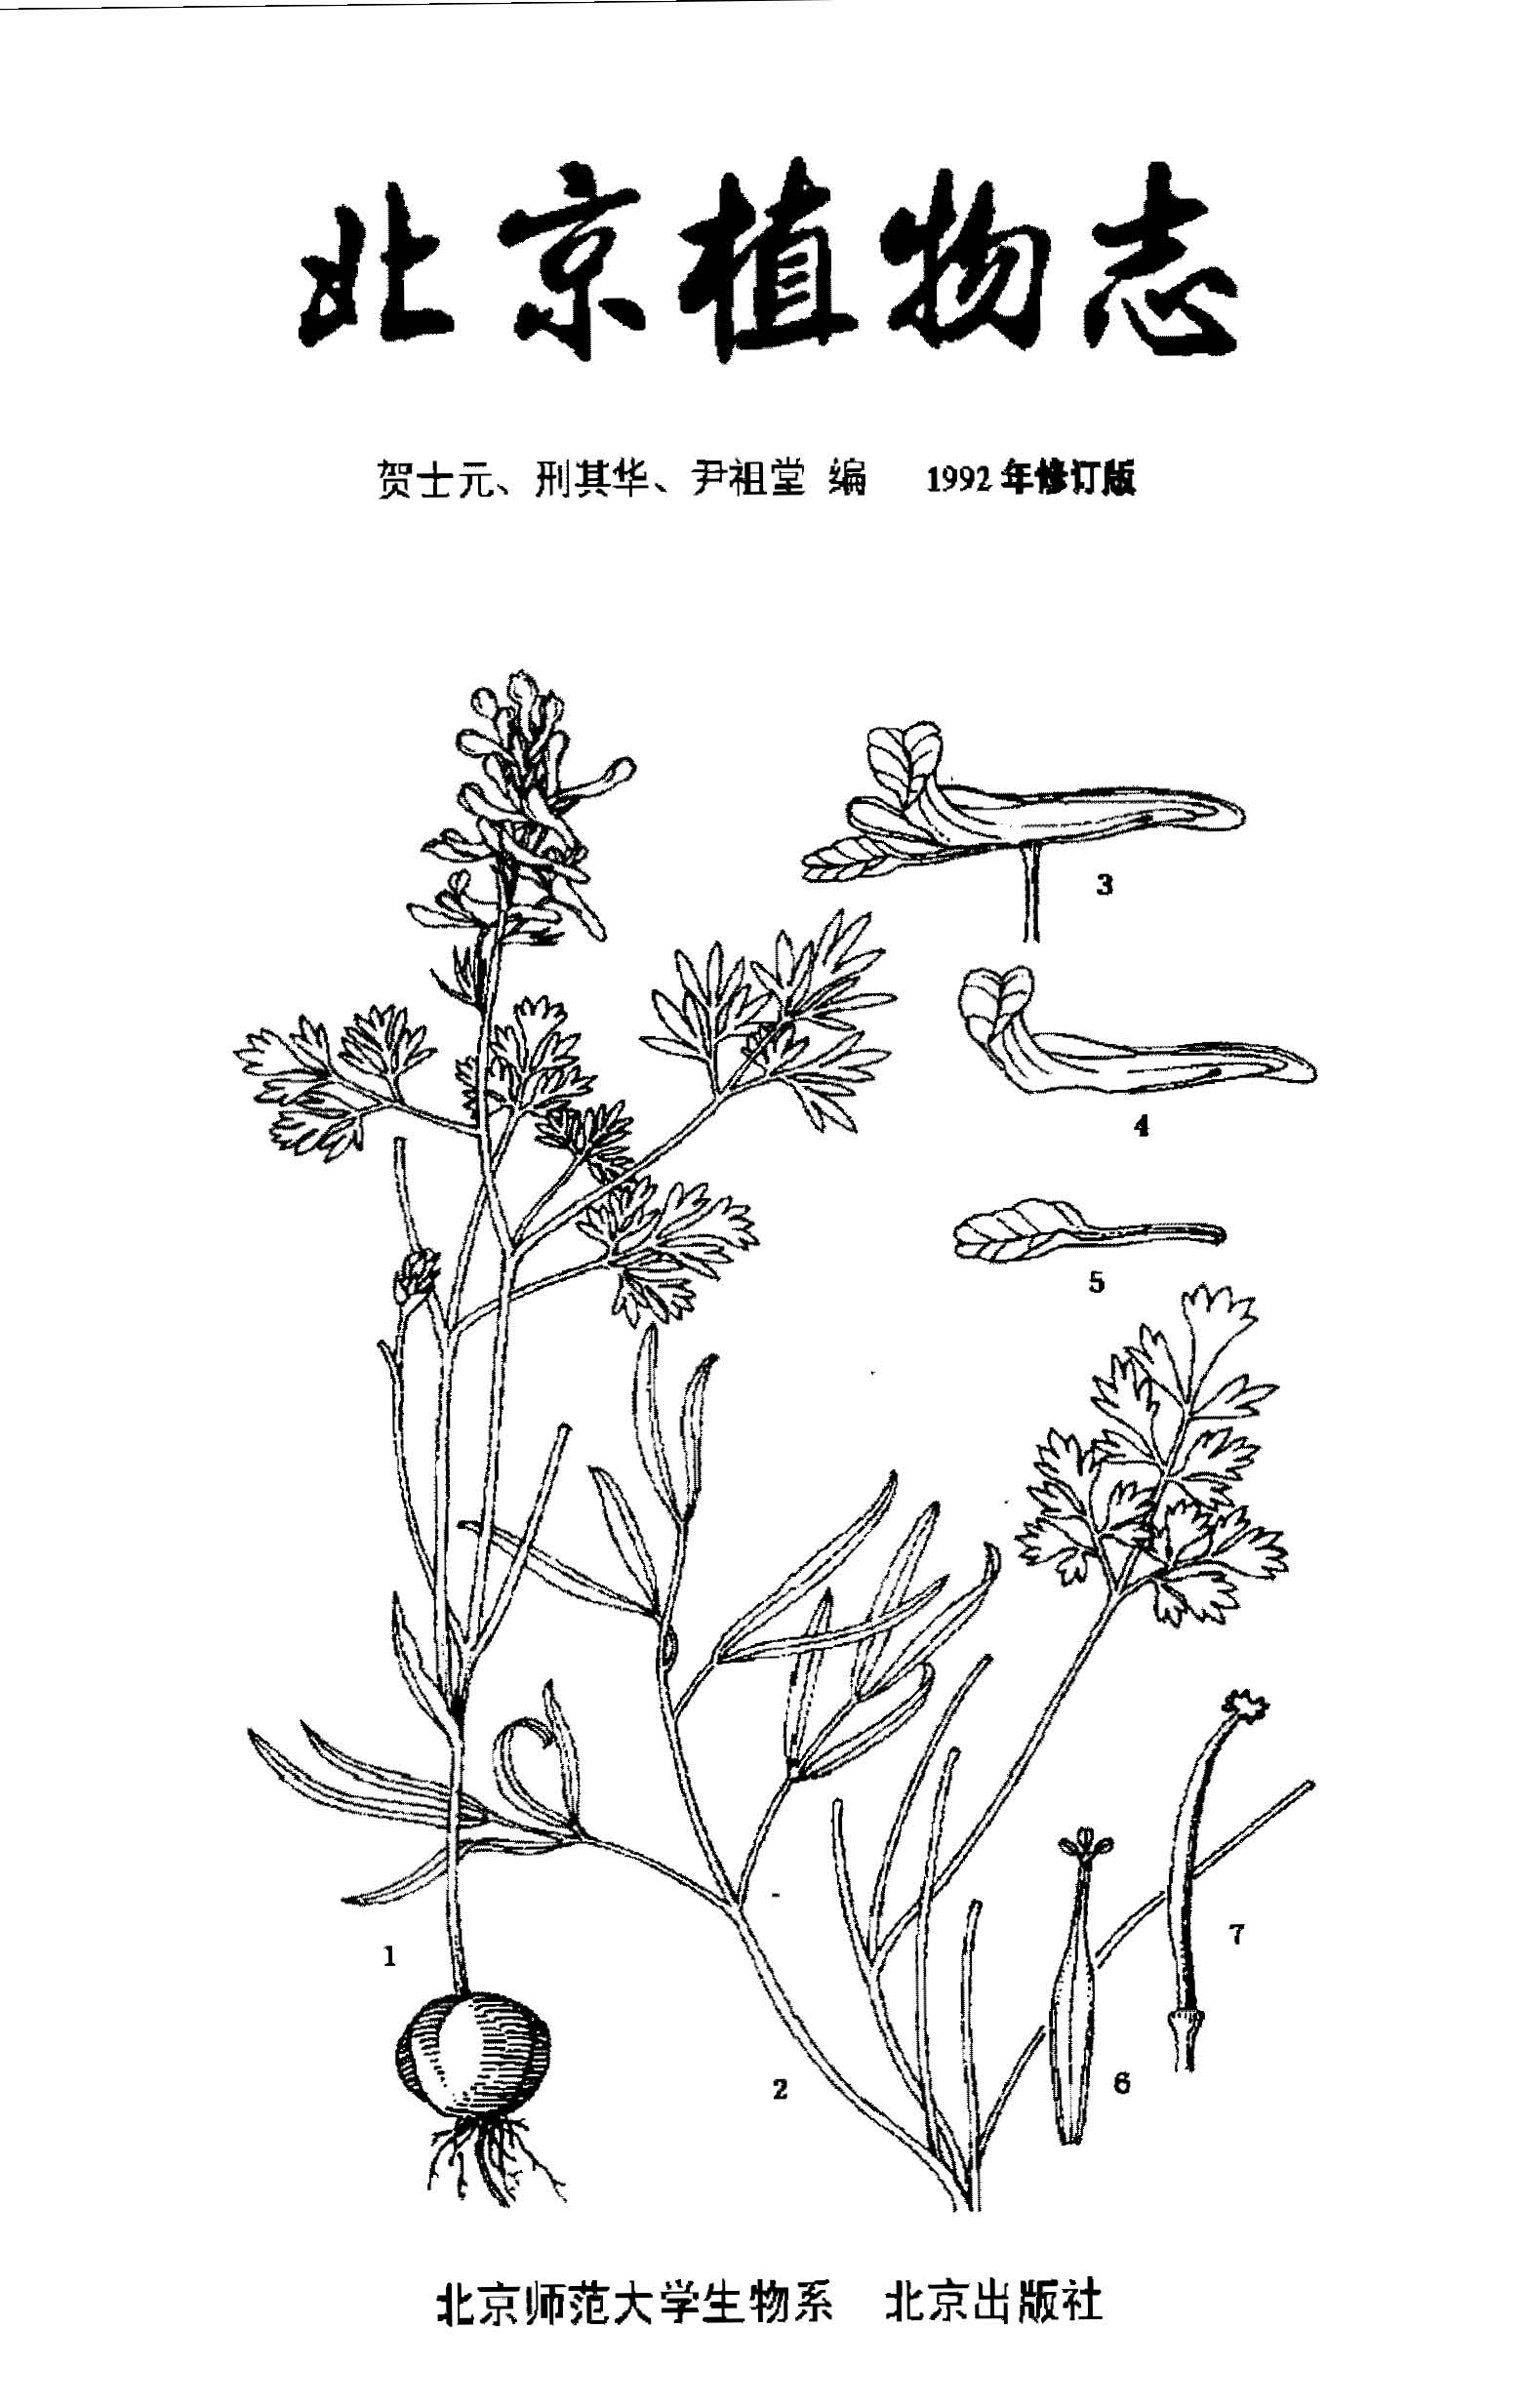 北京植物志 上册